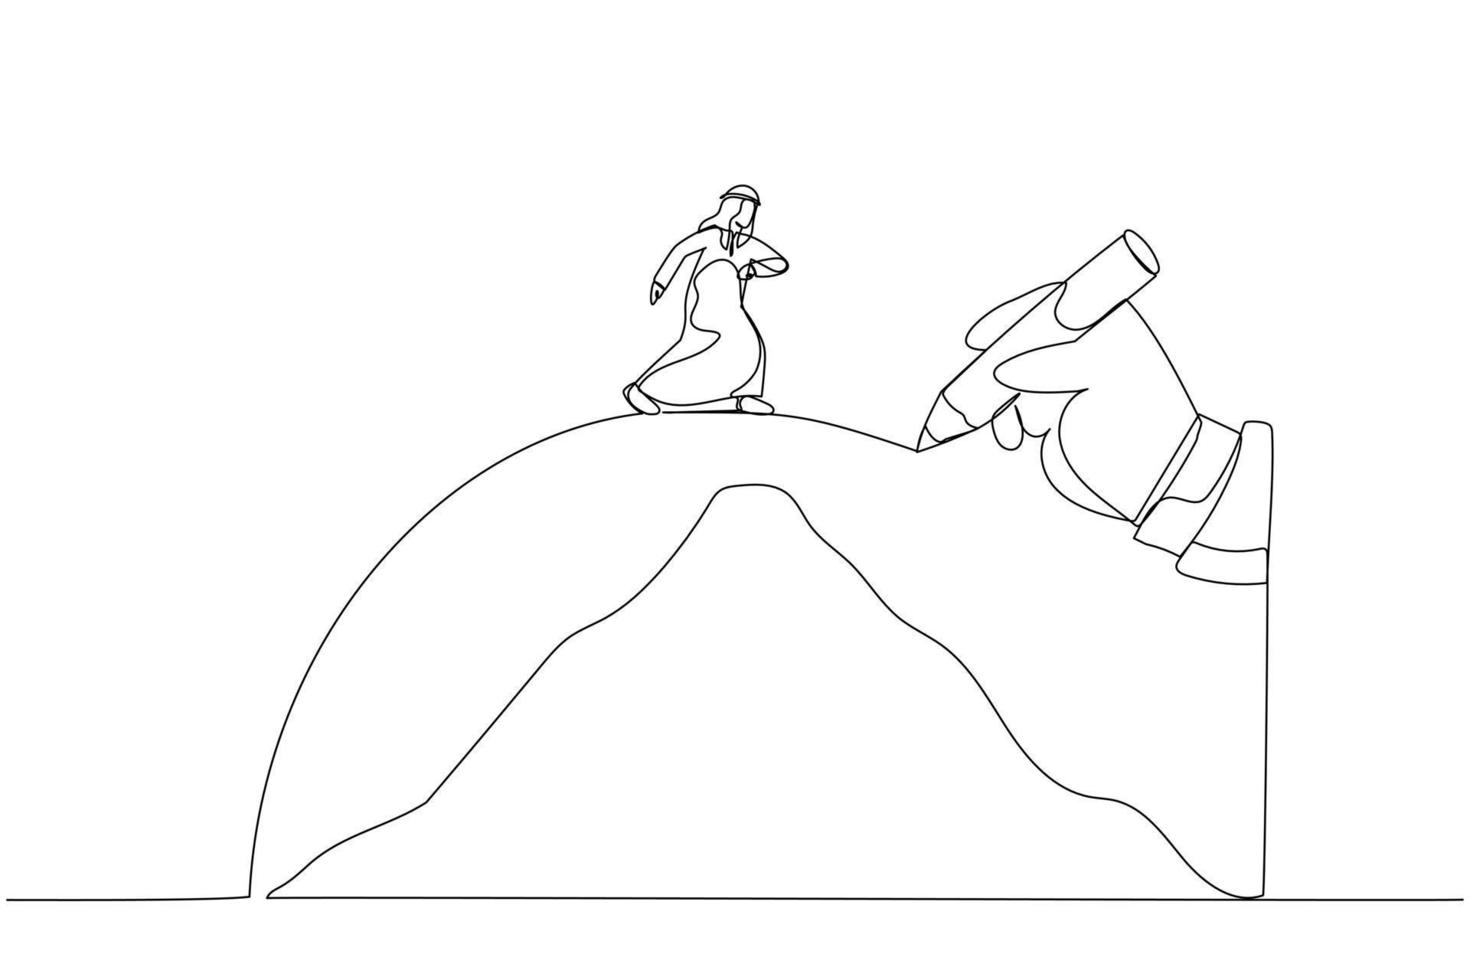 Die Zeichnung einer riesigen Hand zeichnet einen Weg, um dem arabischen Geschäftsmann zu helfen, die Berge zu überqueren, eine Metapher für die Überwindung von Widrigkeiten. Kunst im Stil einer Linie vektor